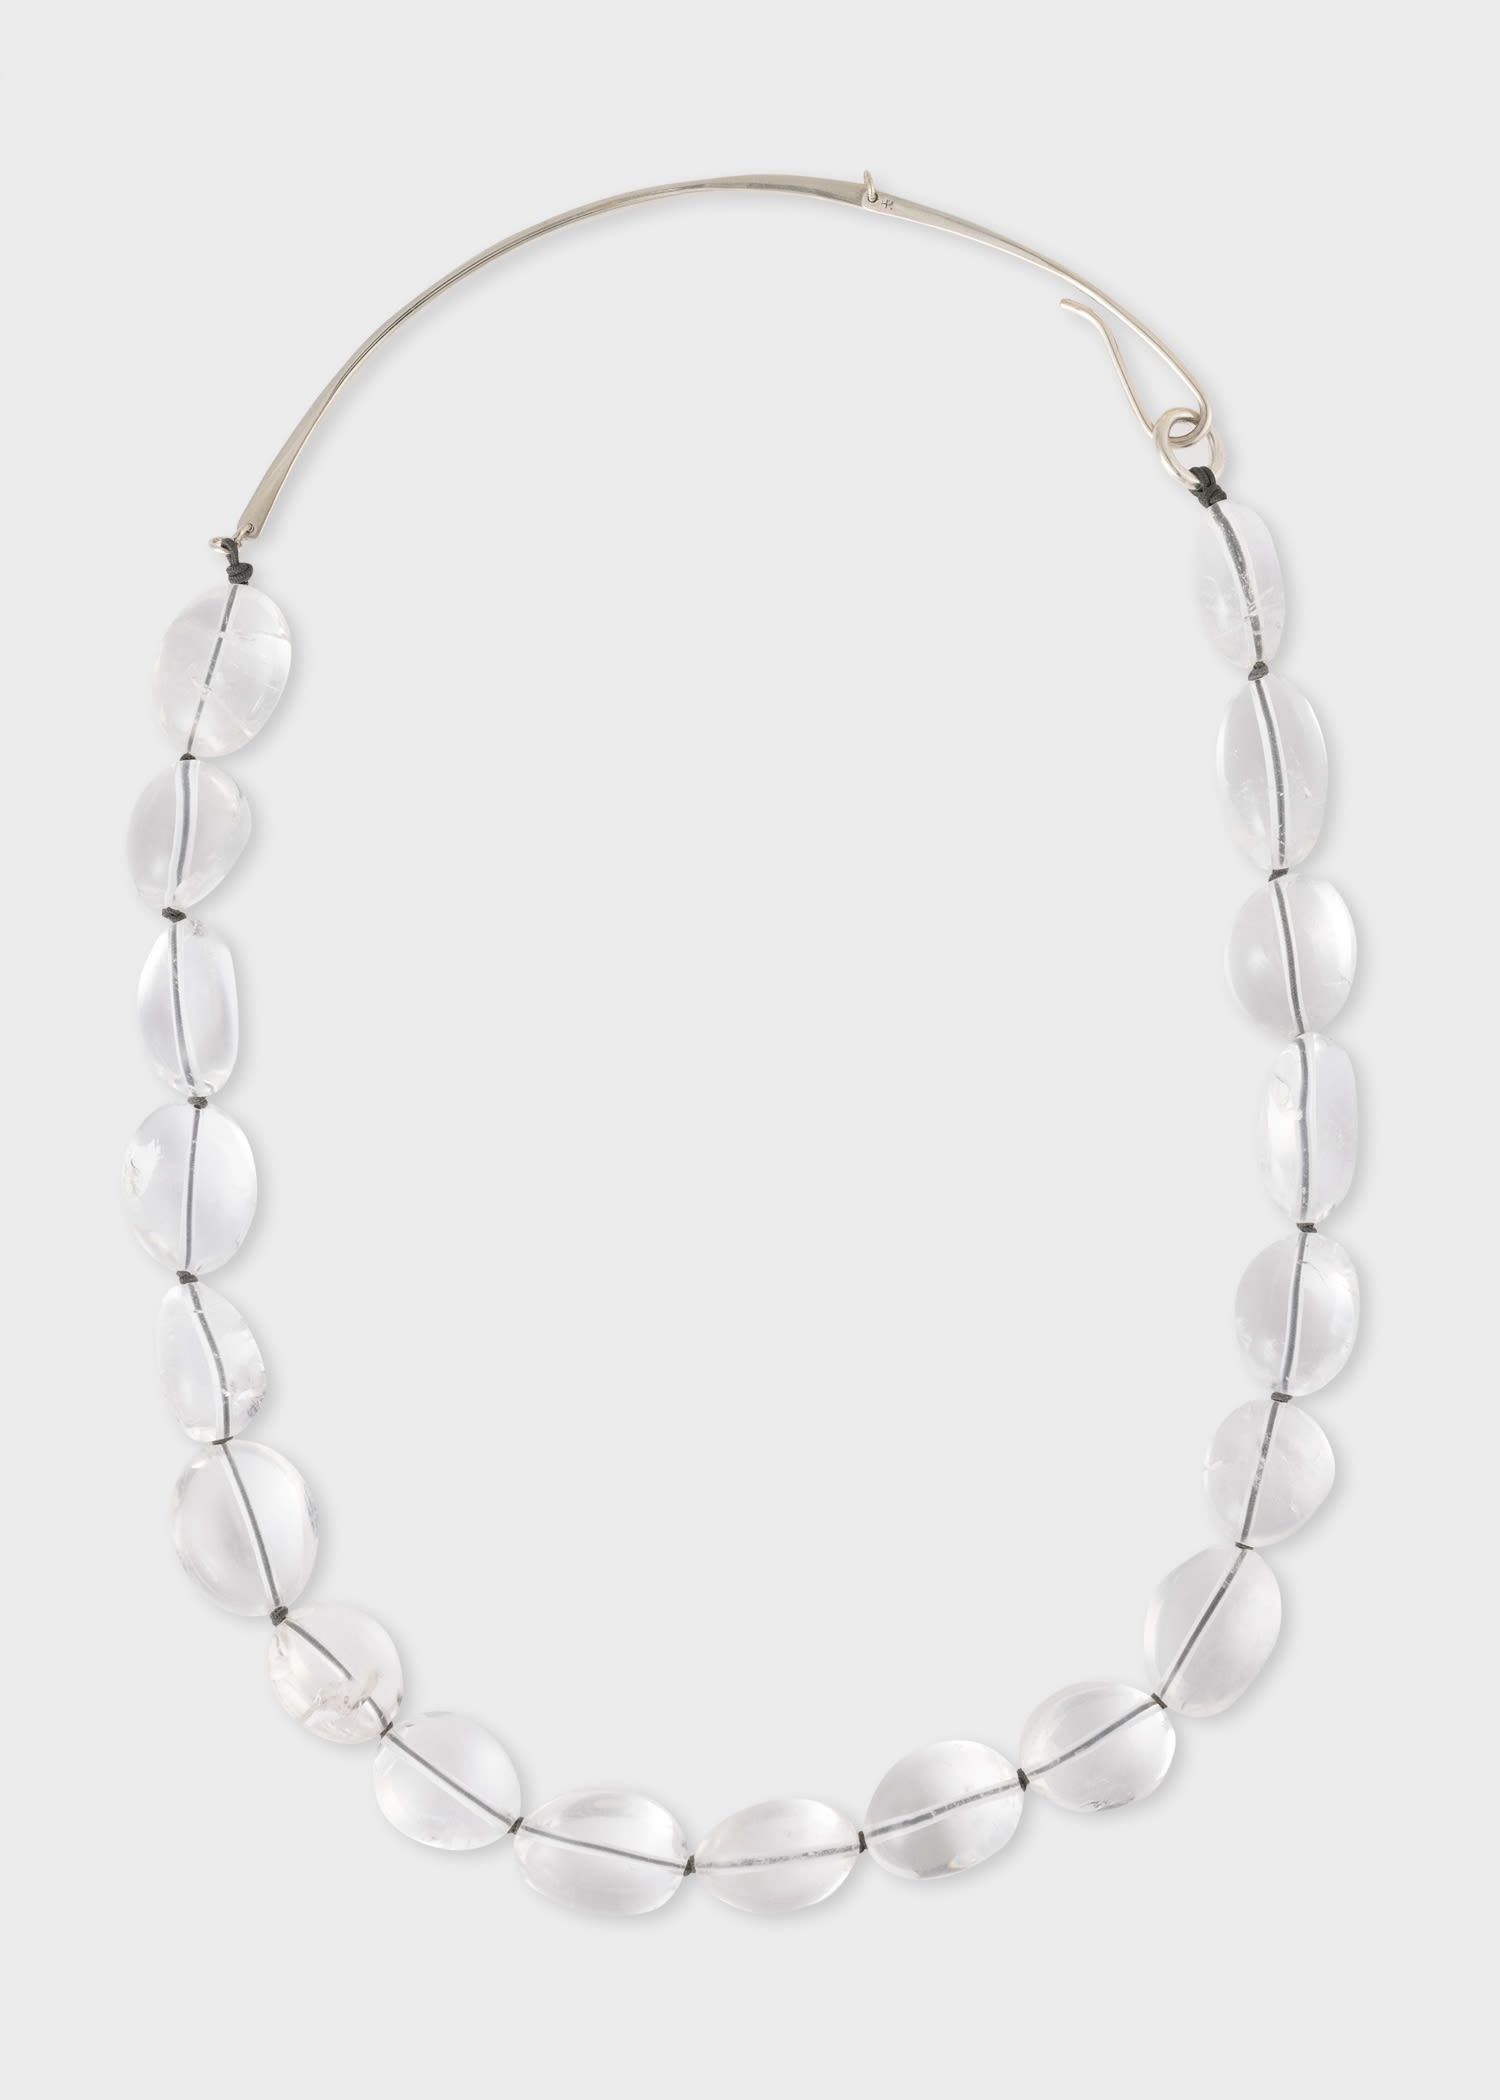 'Klara' Crystal Bead Necklace by Helena Rohner - 2